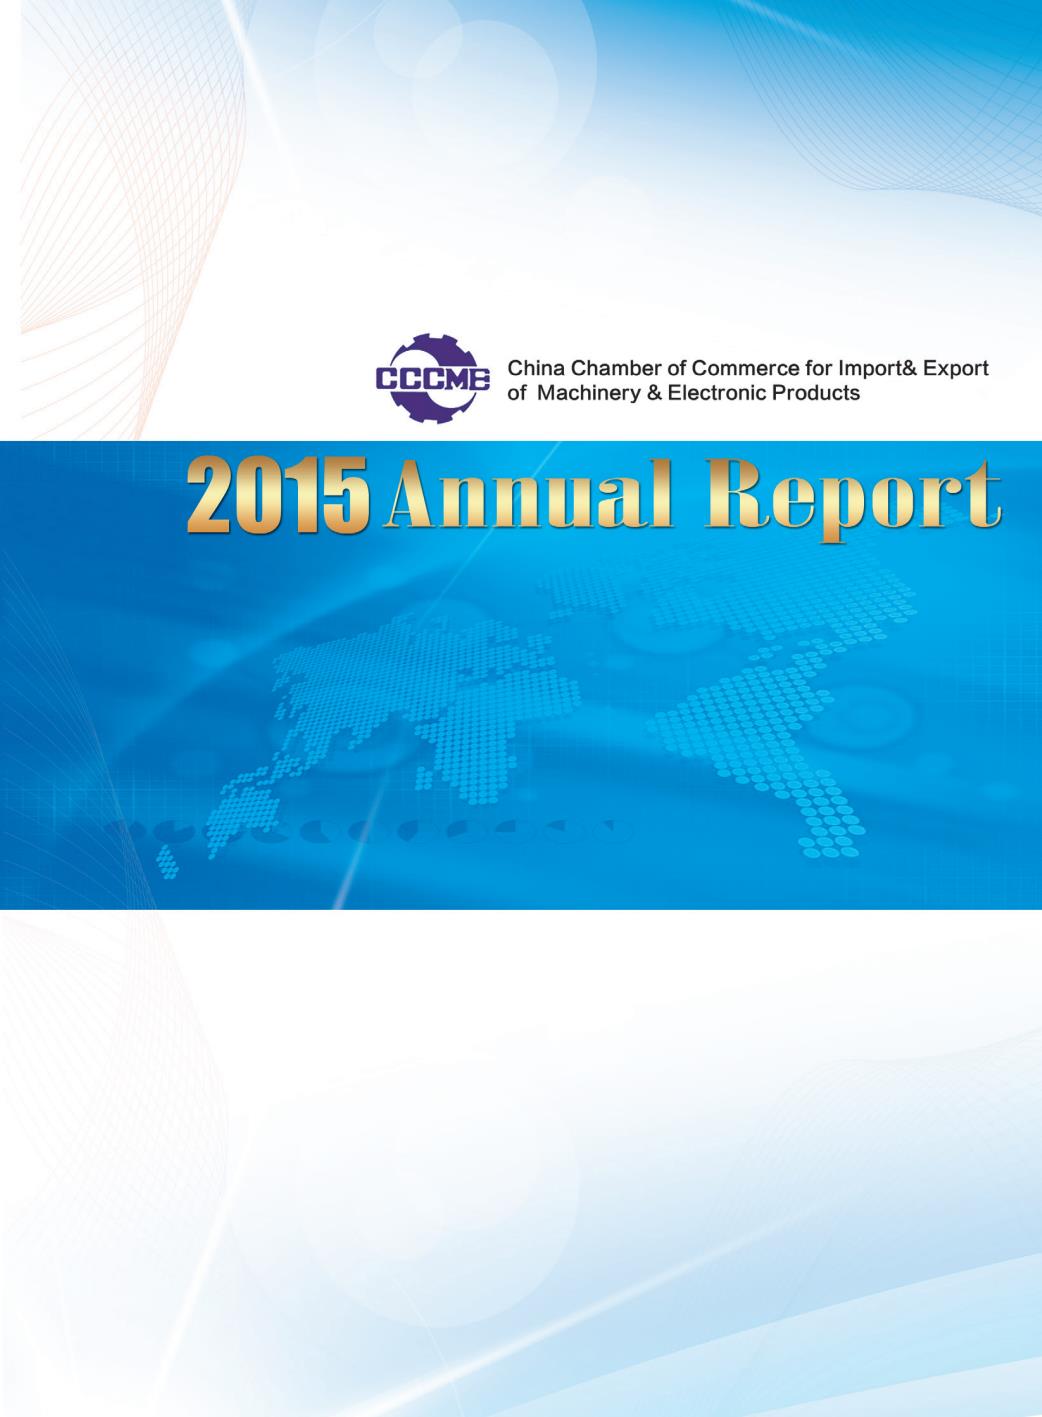 机电商会2015年度报告-中文版